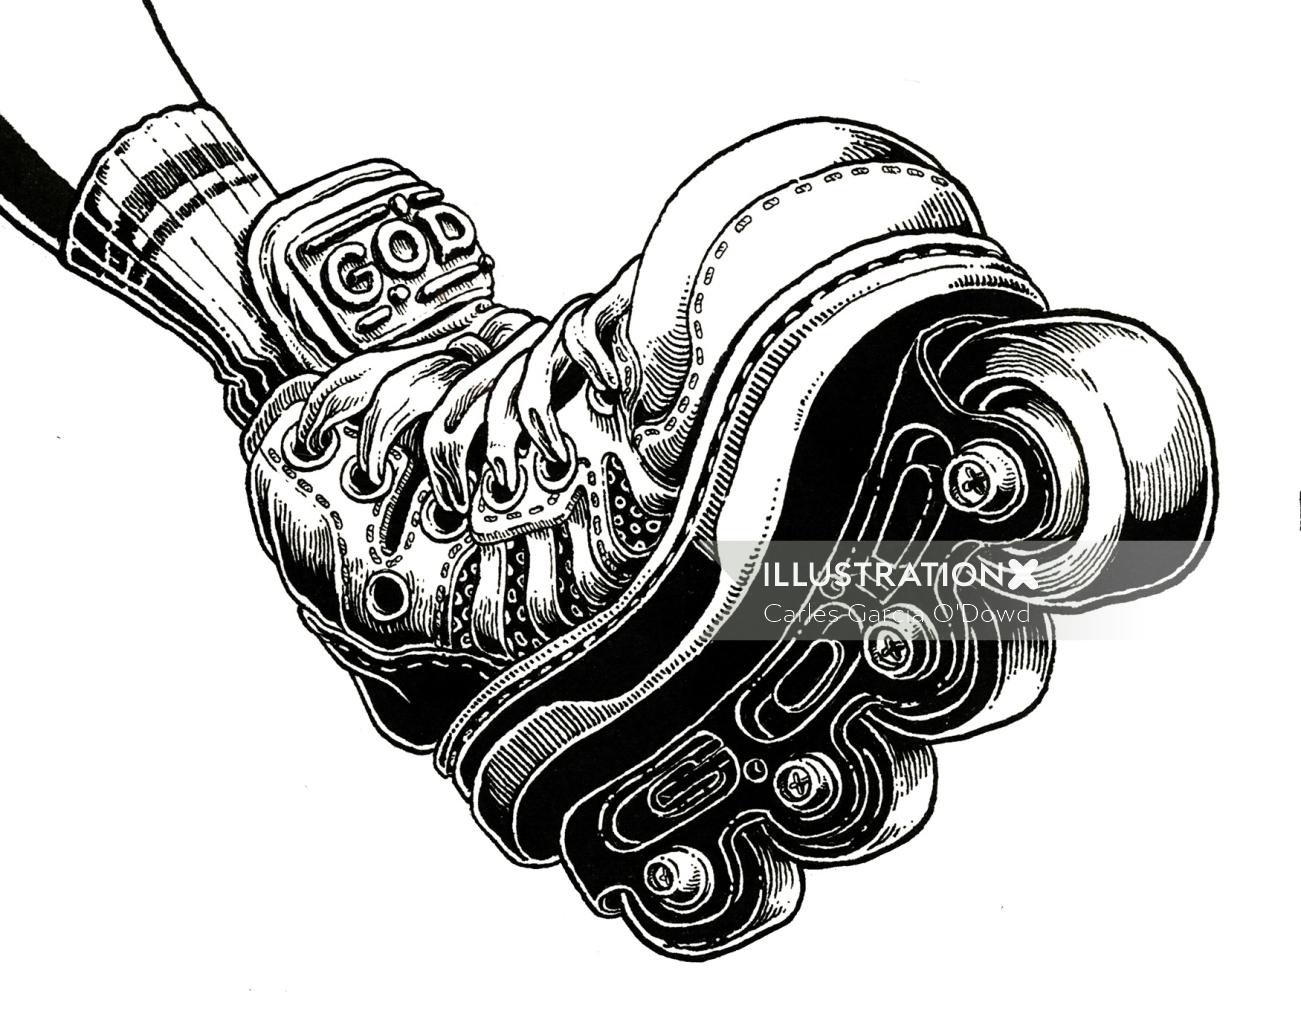 Illustration in black and white of roller skates